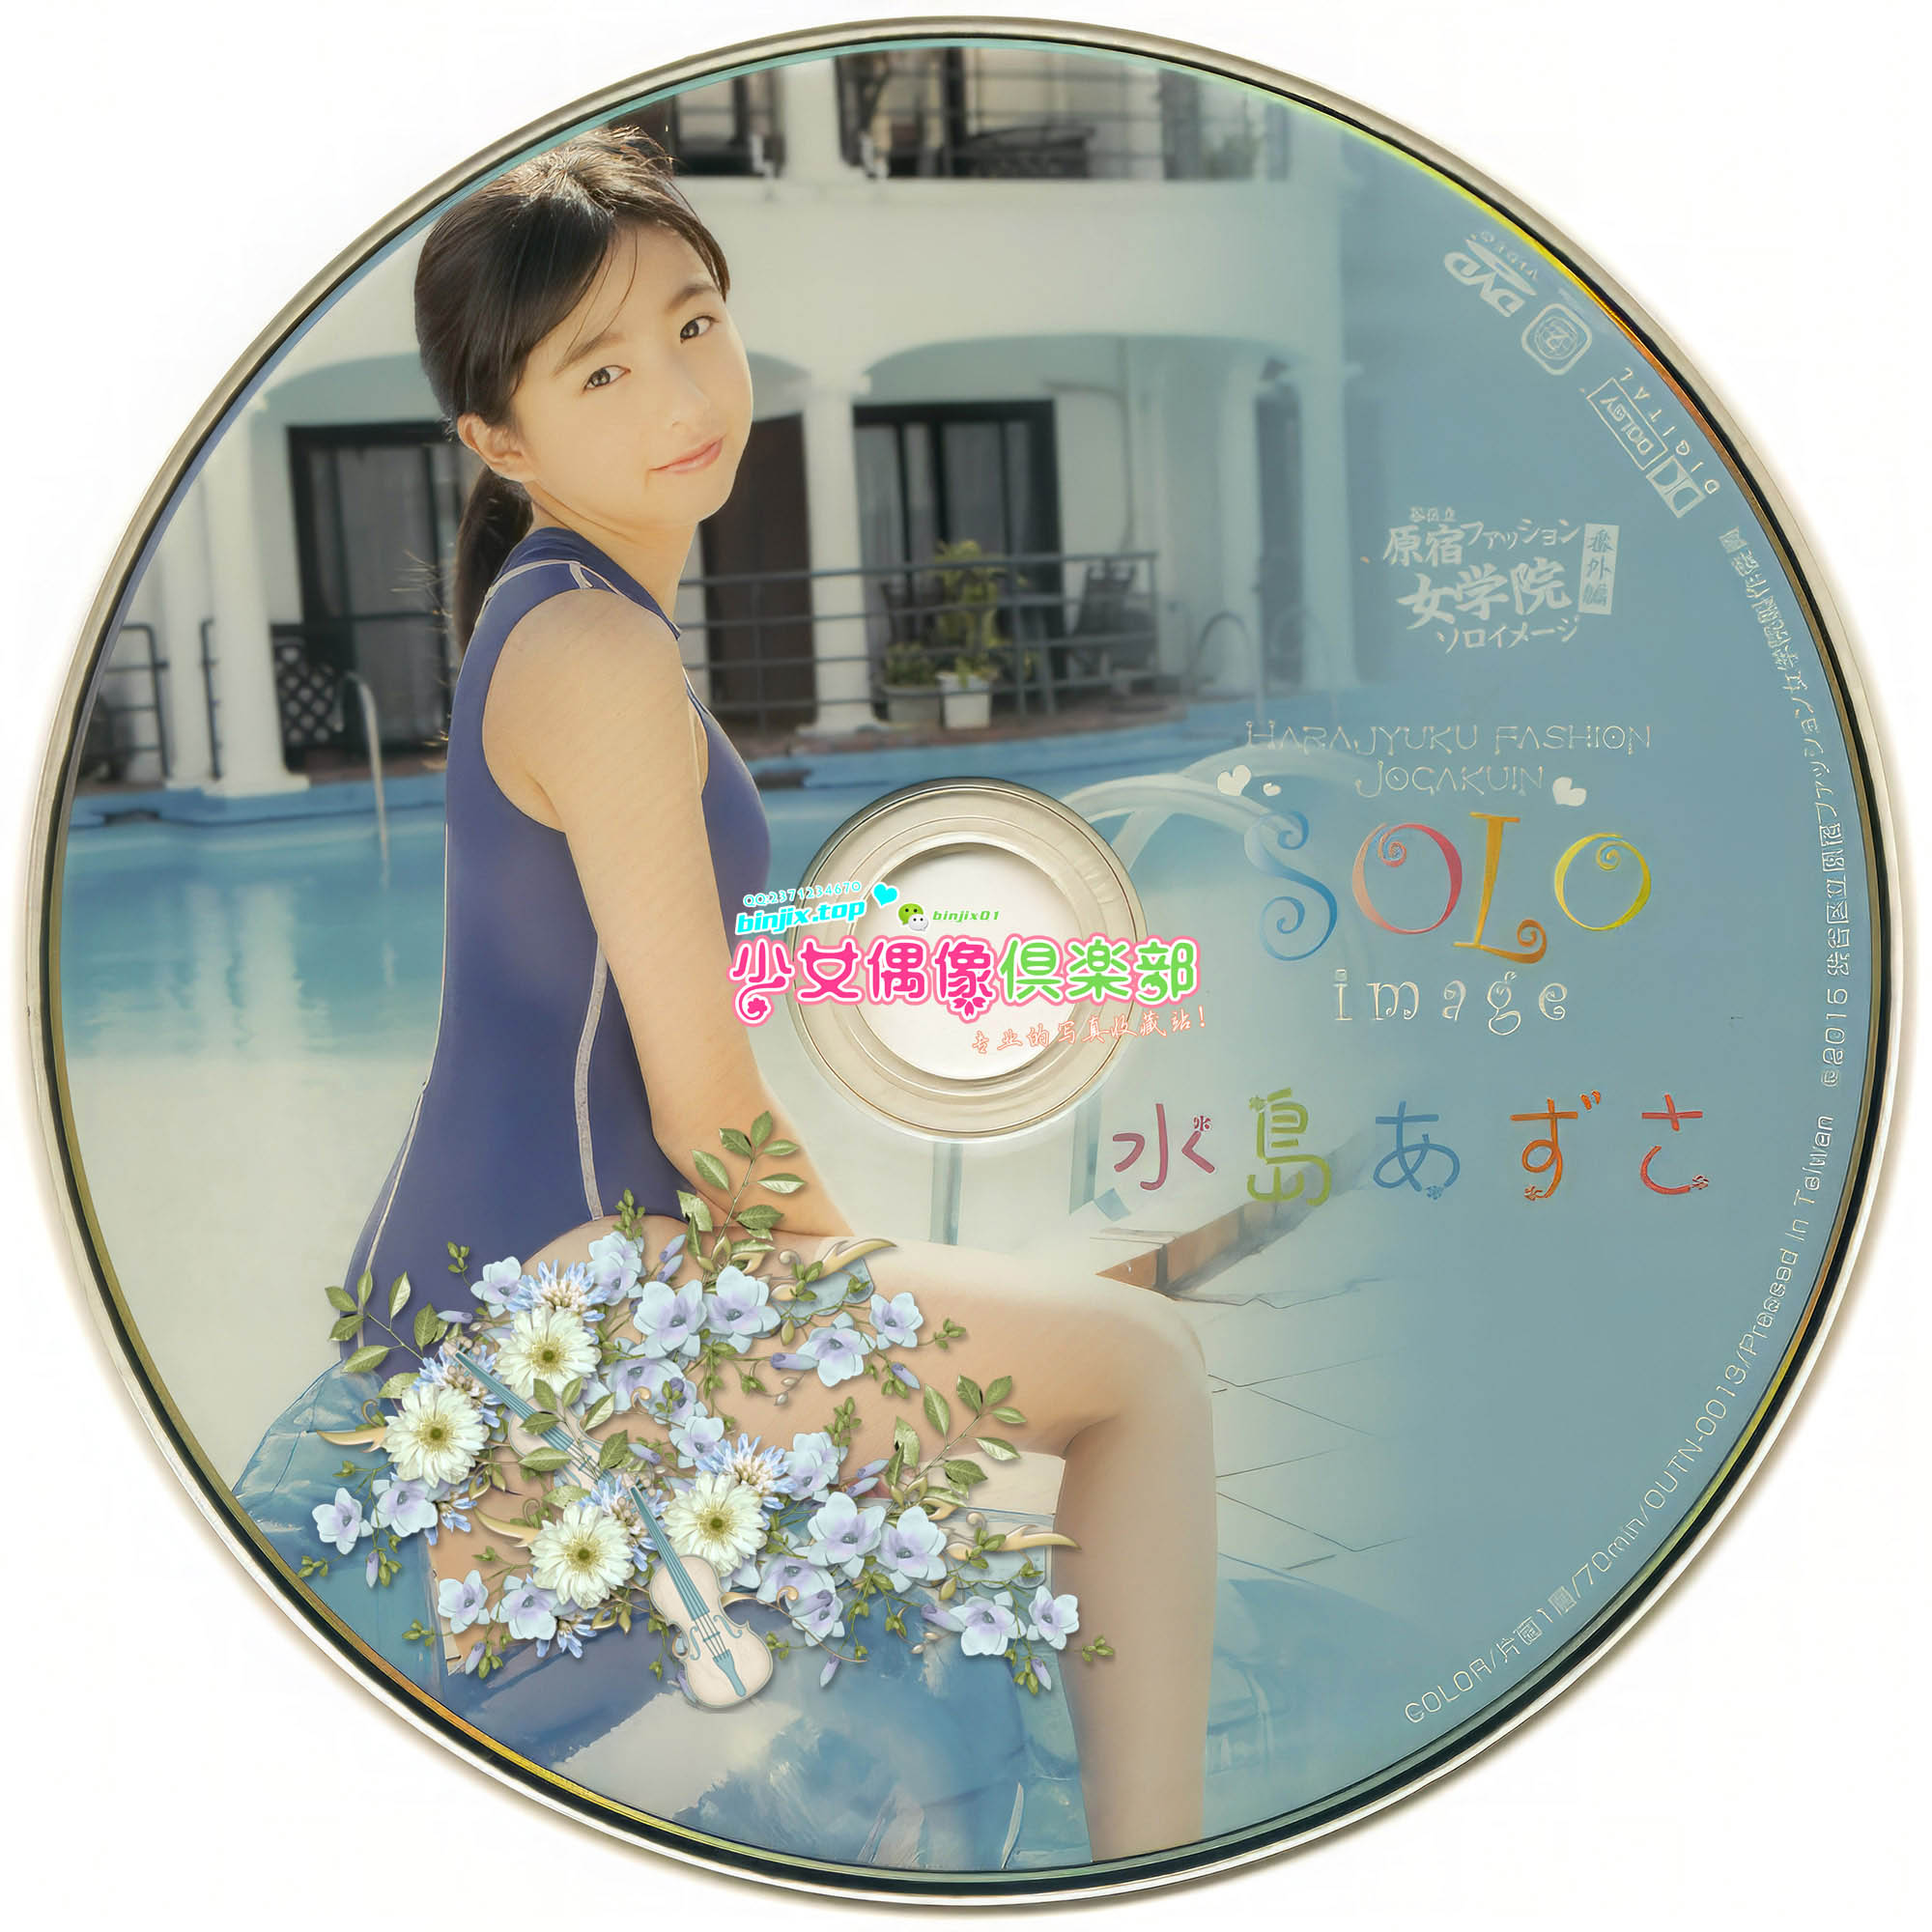 0013 Disc-2.jpg